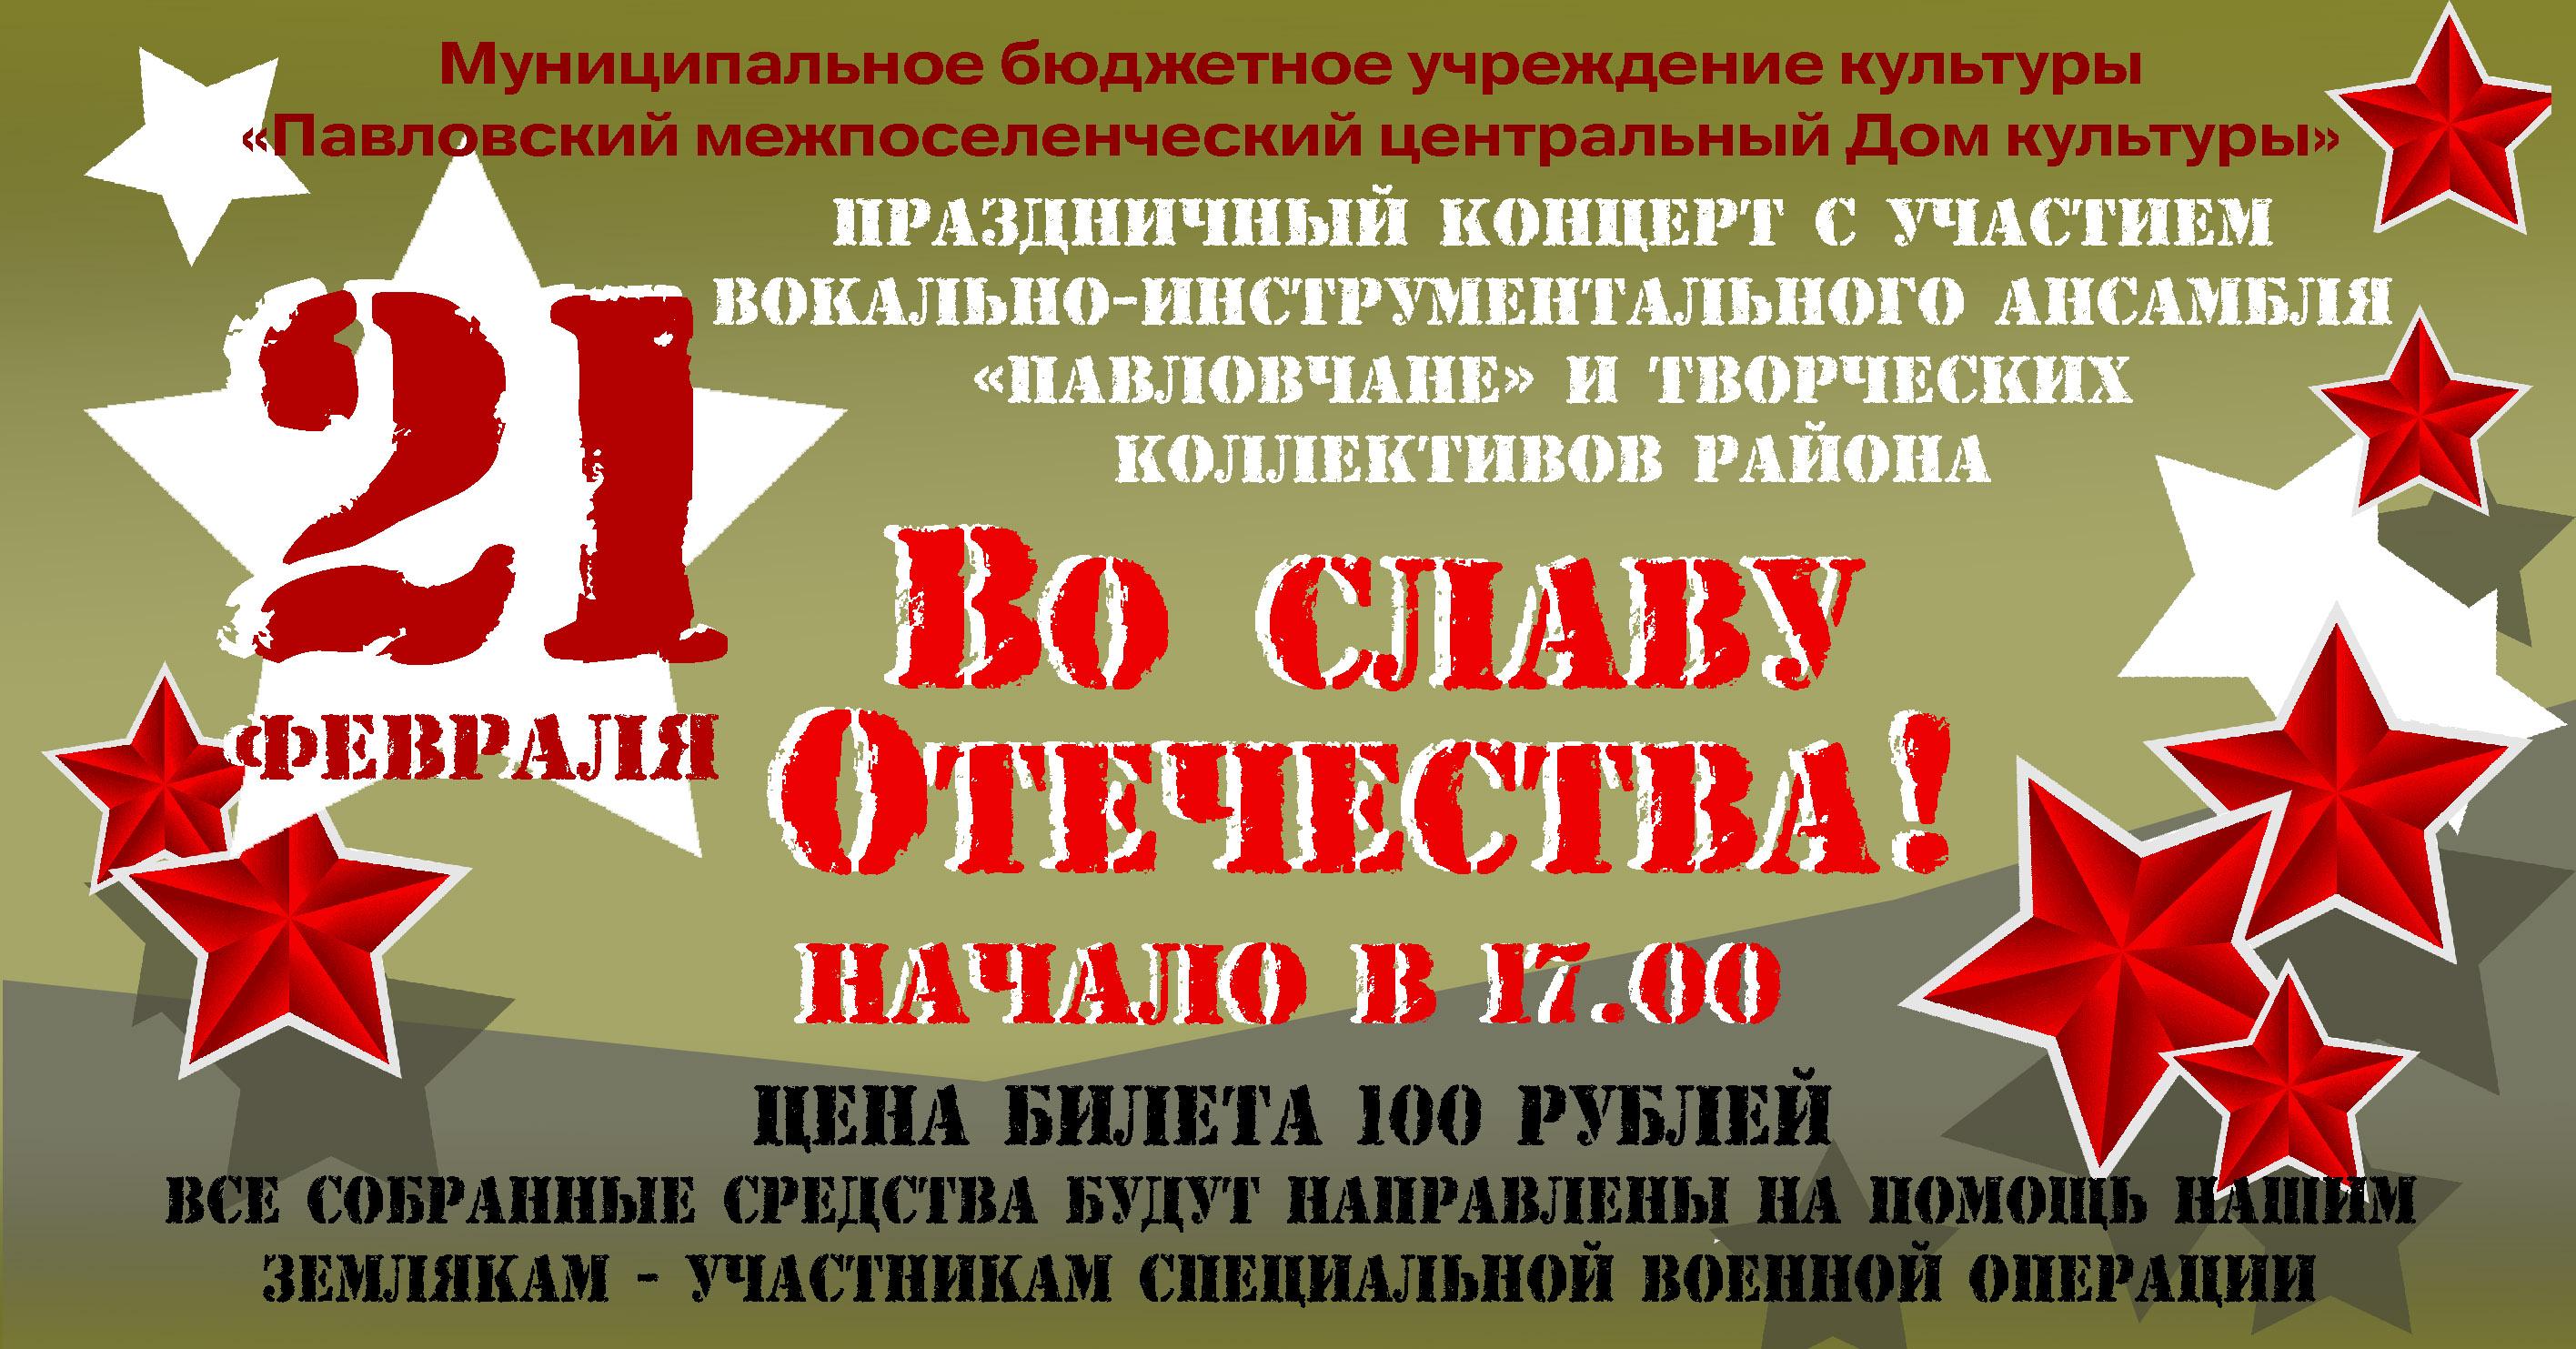 В Павловке состоится праздничный концерт ко Дню защитника Отечества.